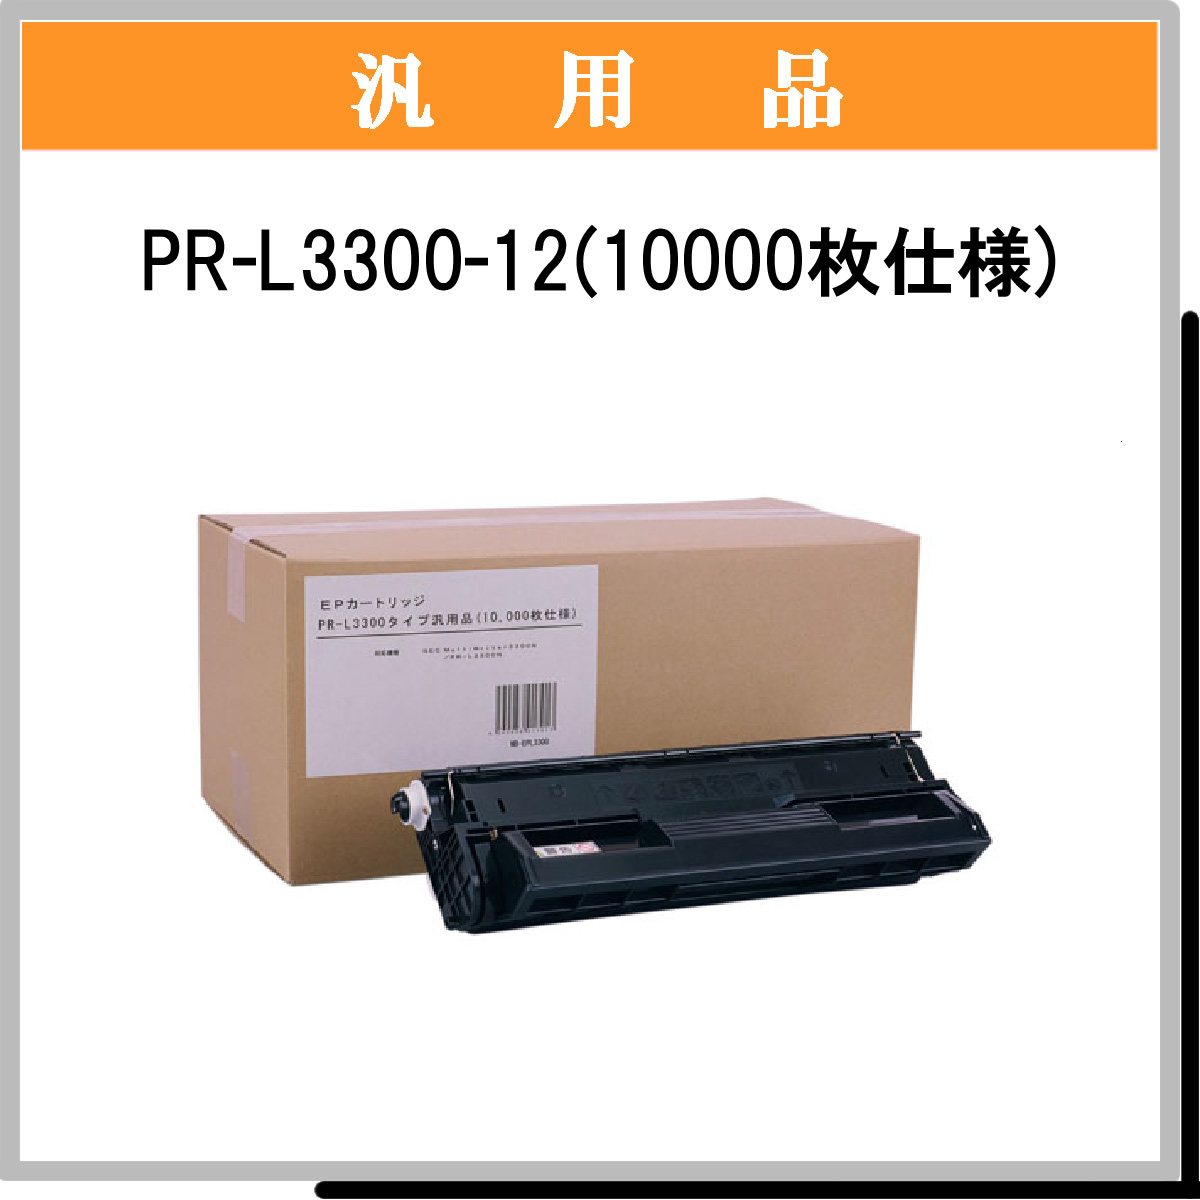 PR-L3300-12 (10000枚仕様) 汎用品